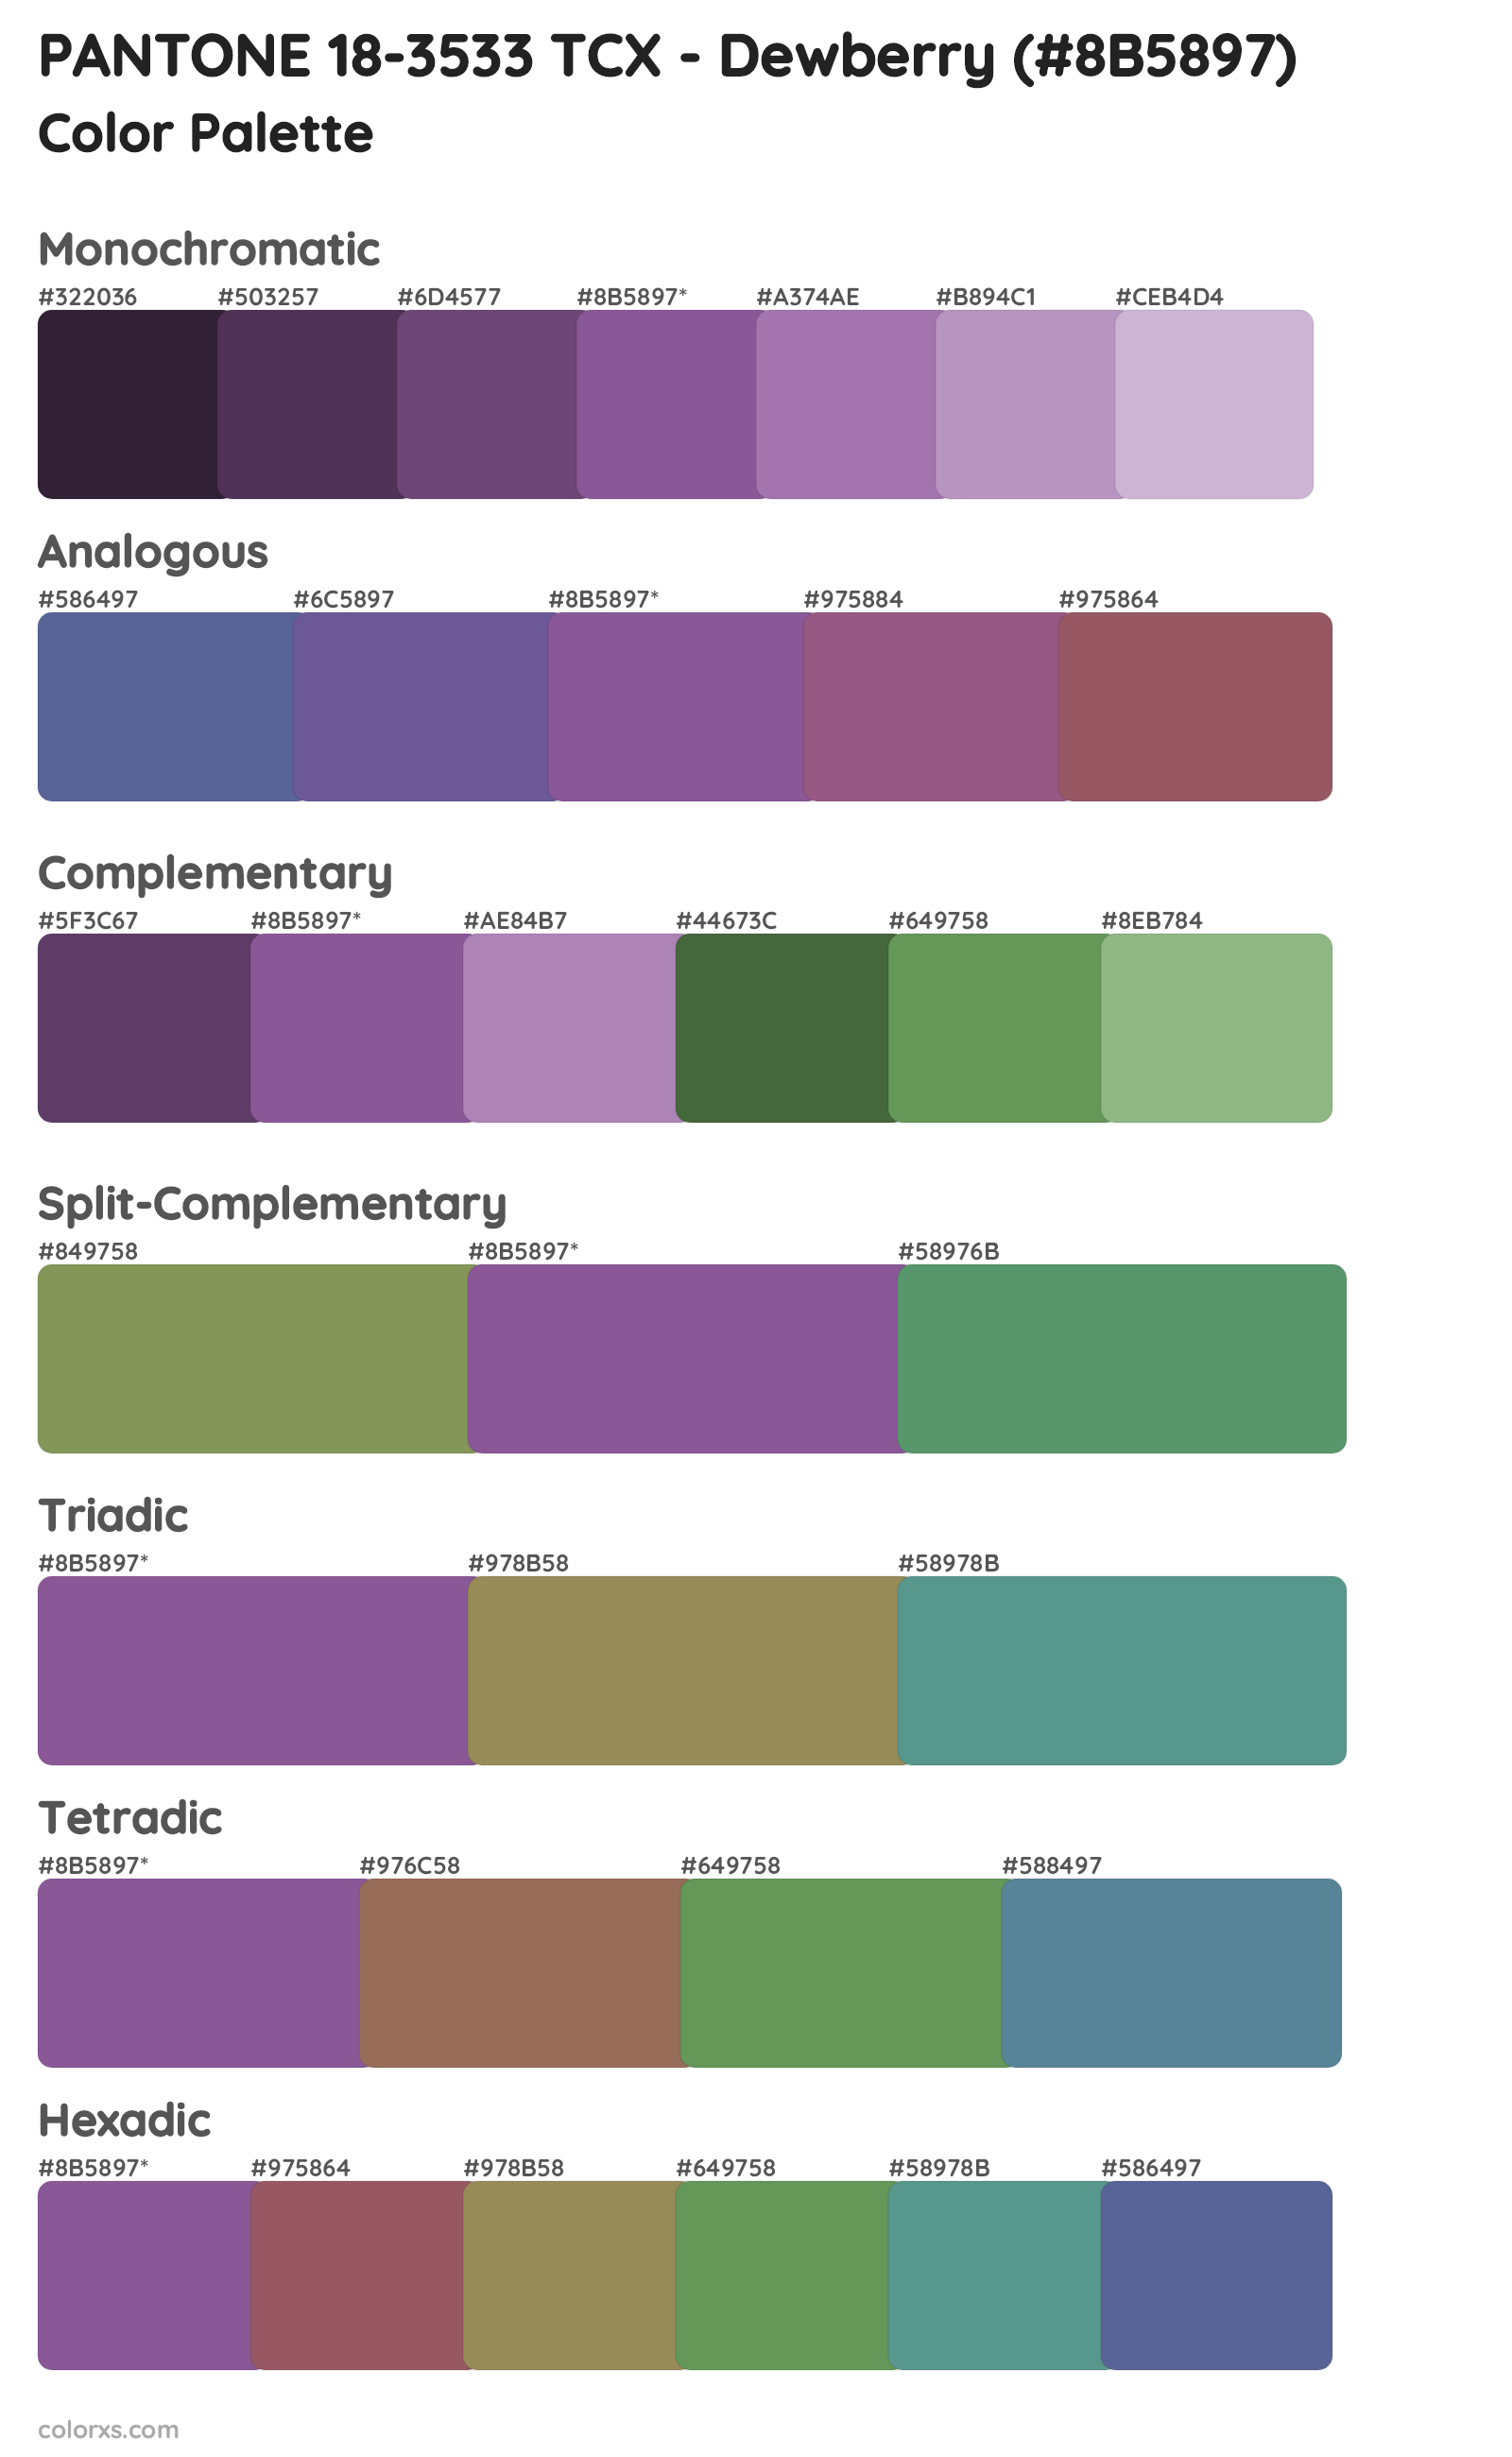 PANTONE 18-3533 TCX - Dewberry Color Scheme Palettes